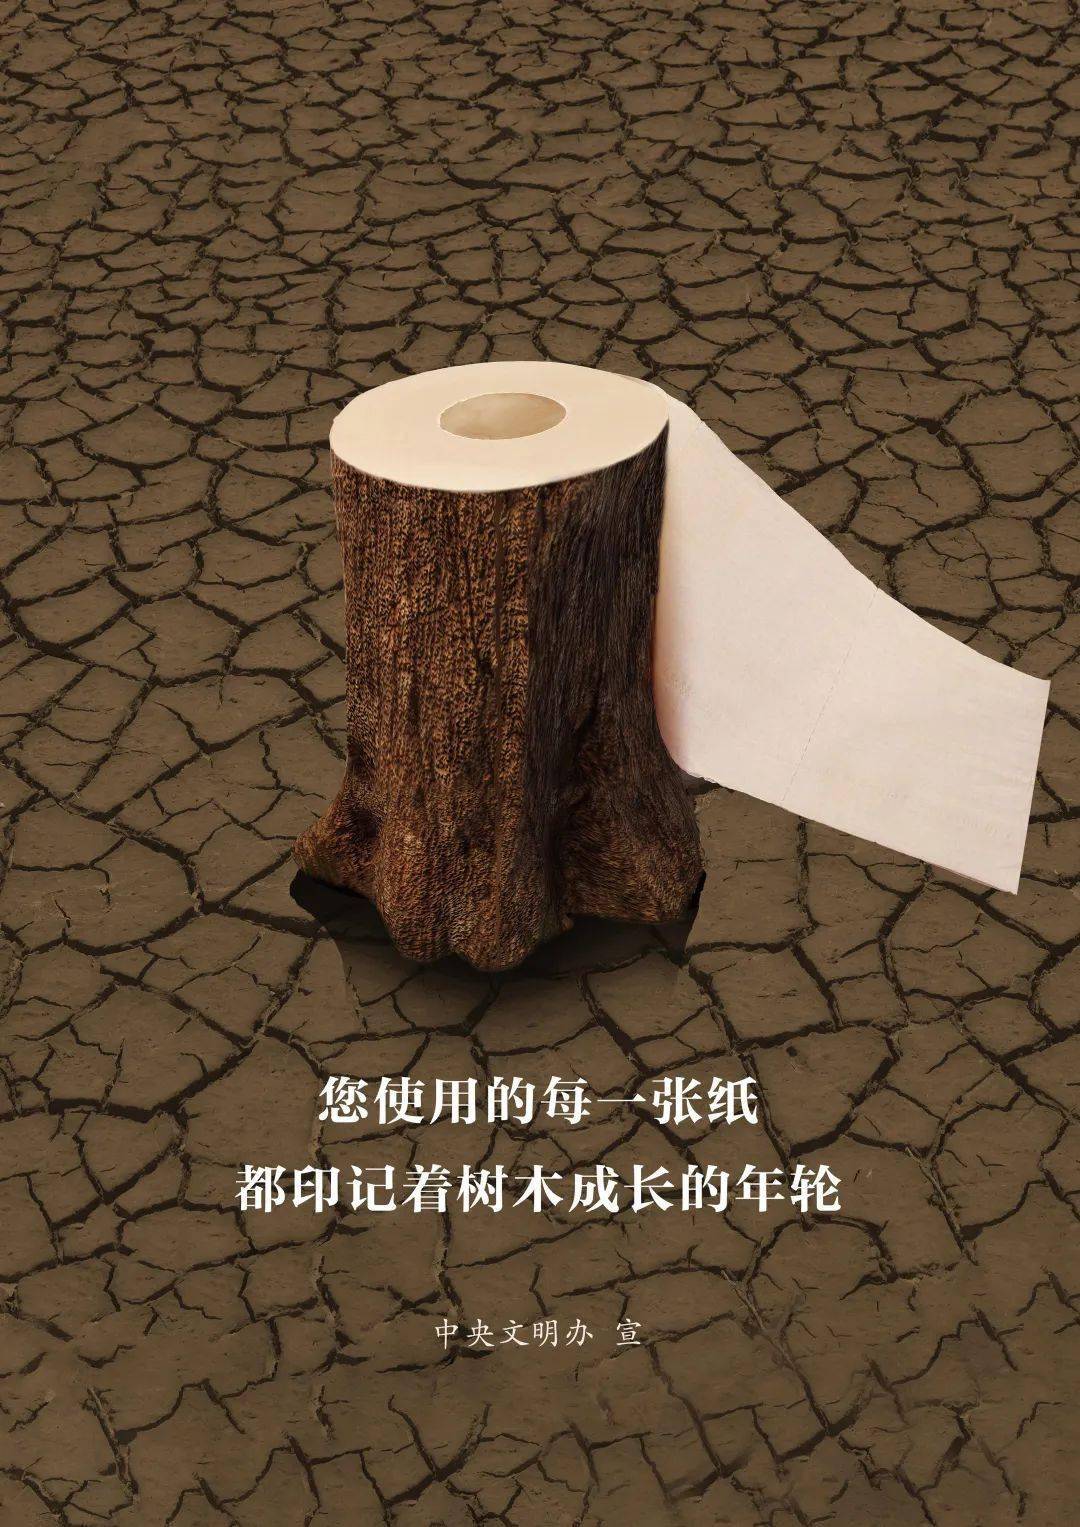 公益广告节约用纸积木成林